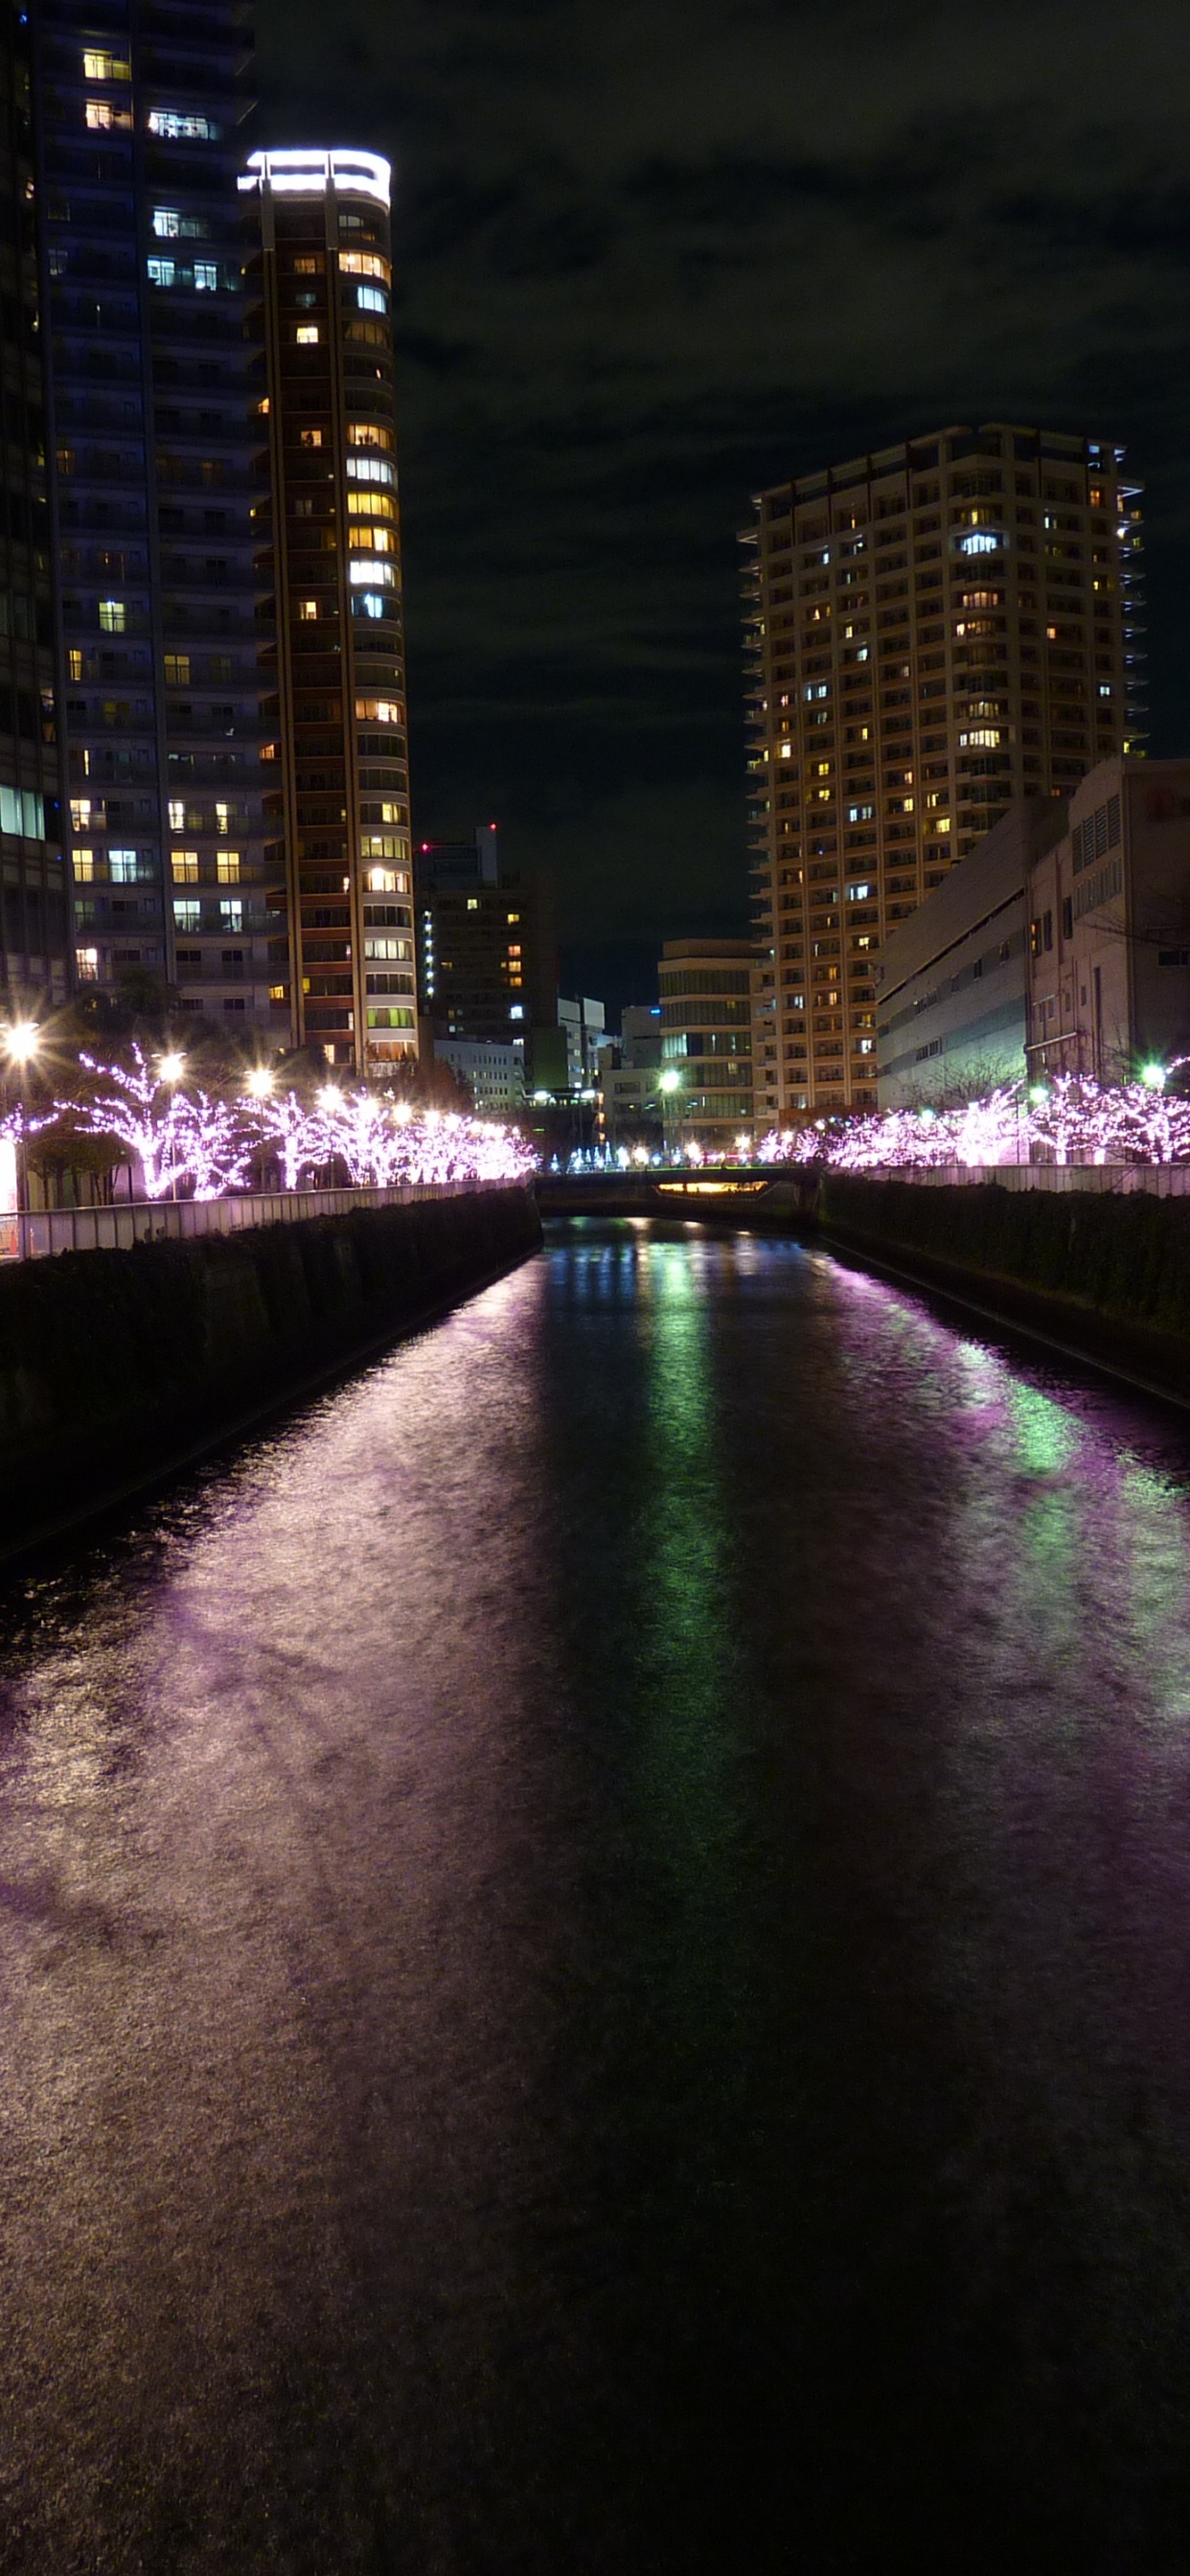 Lumières Violettes Sur le Pont Pendant la Nuit. Wallpaper in 1242x2688 Resolution